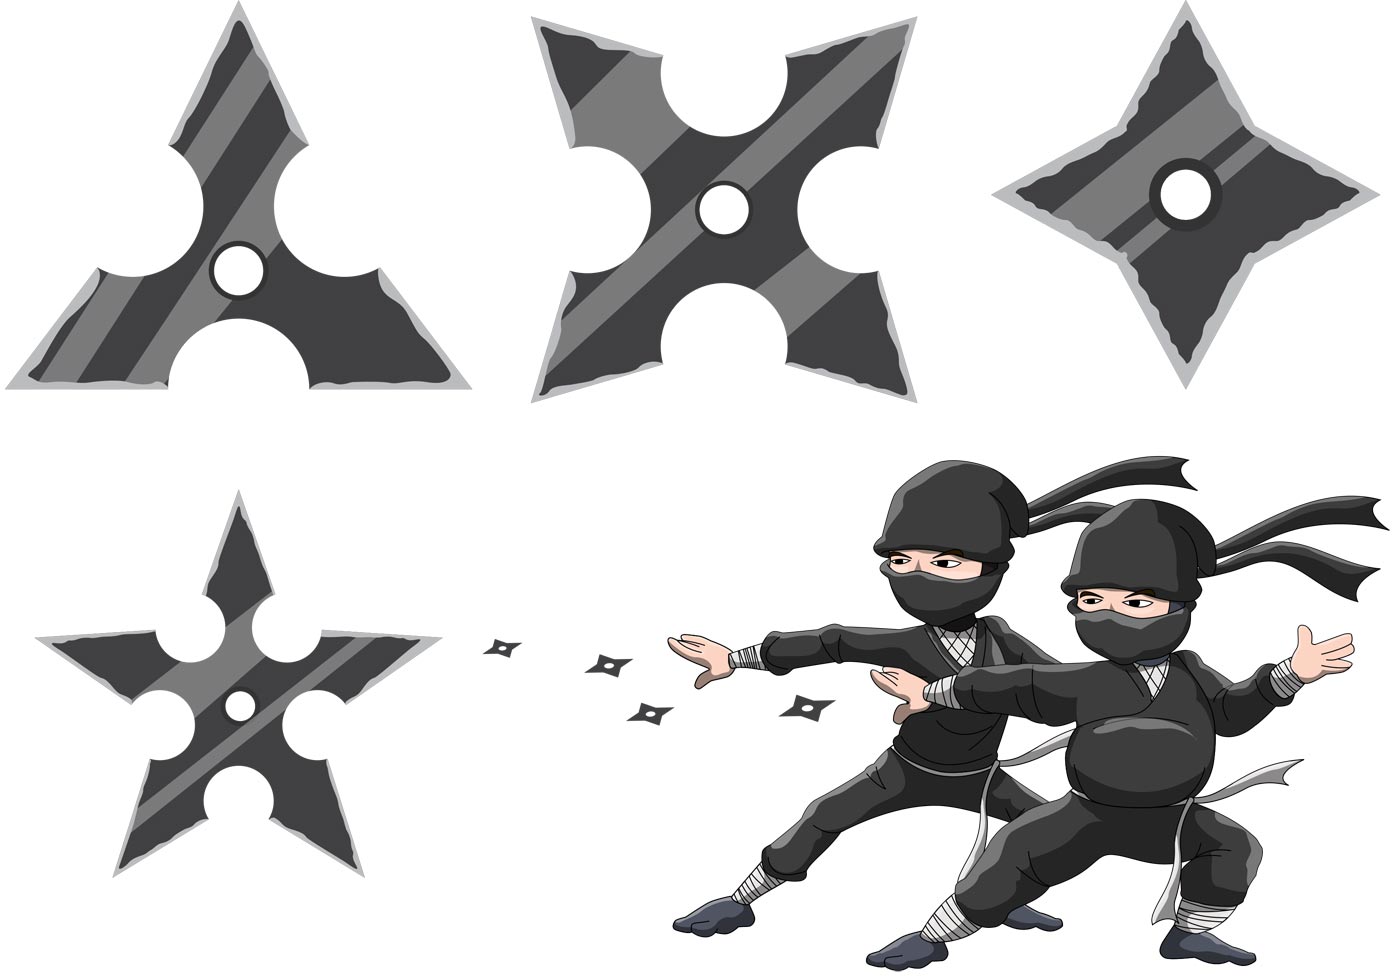 Ninja's Star Vectors - Download Free Vector Art, Stock Graphics & Images